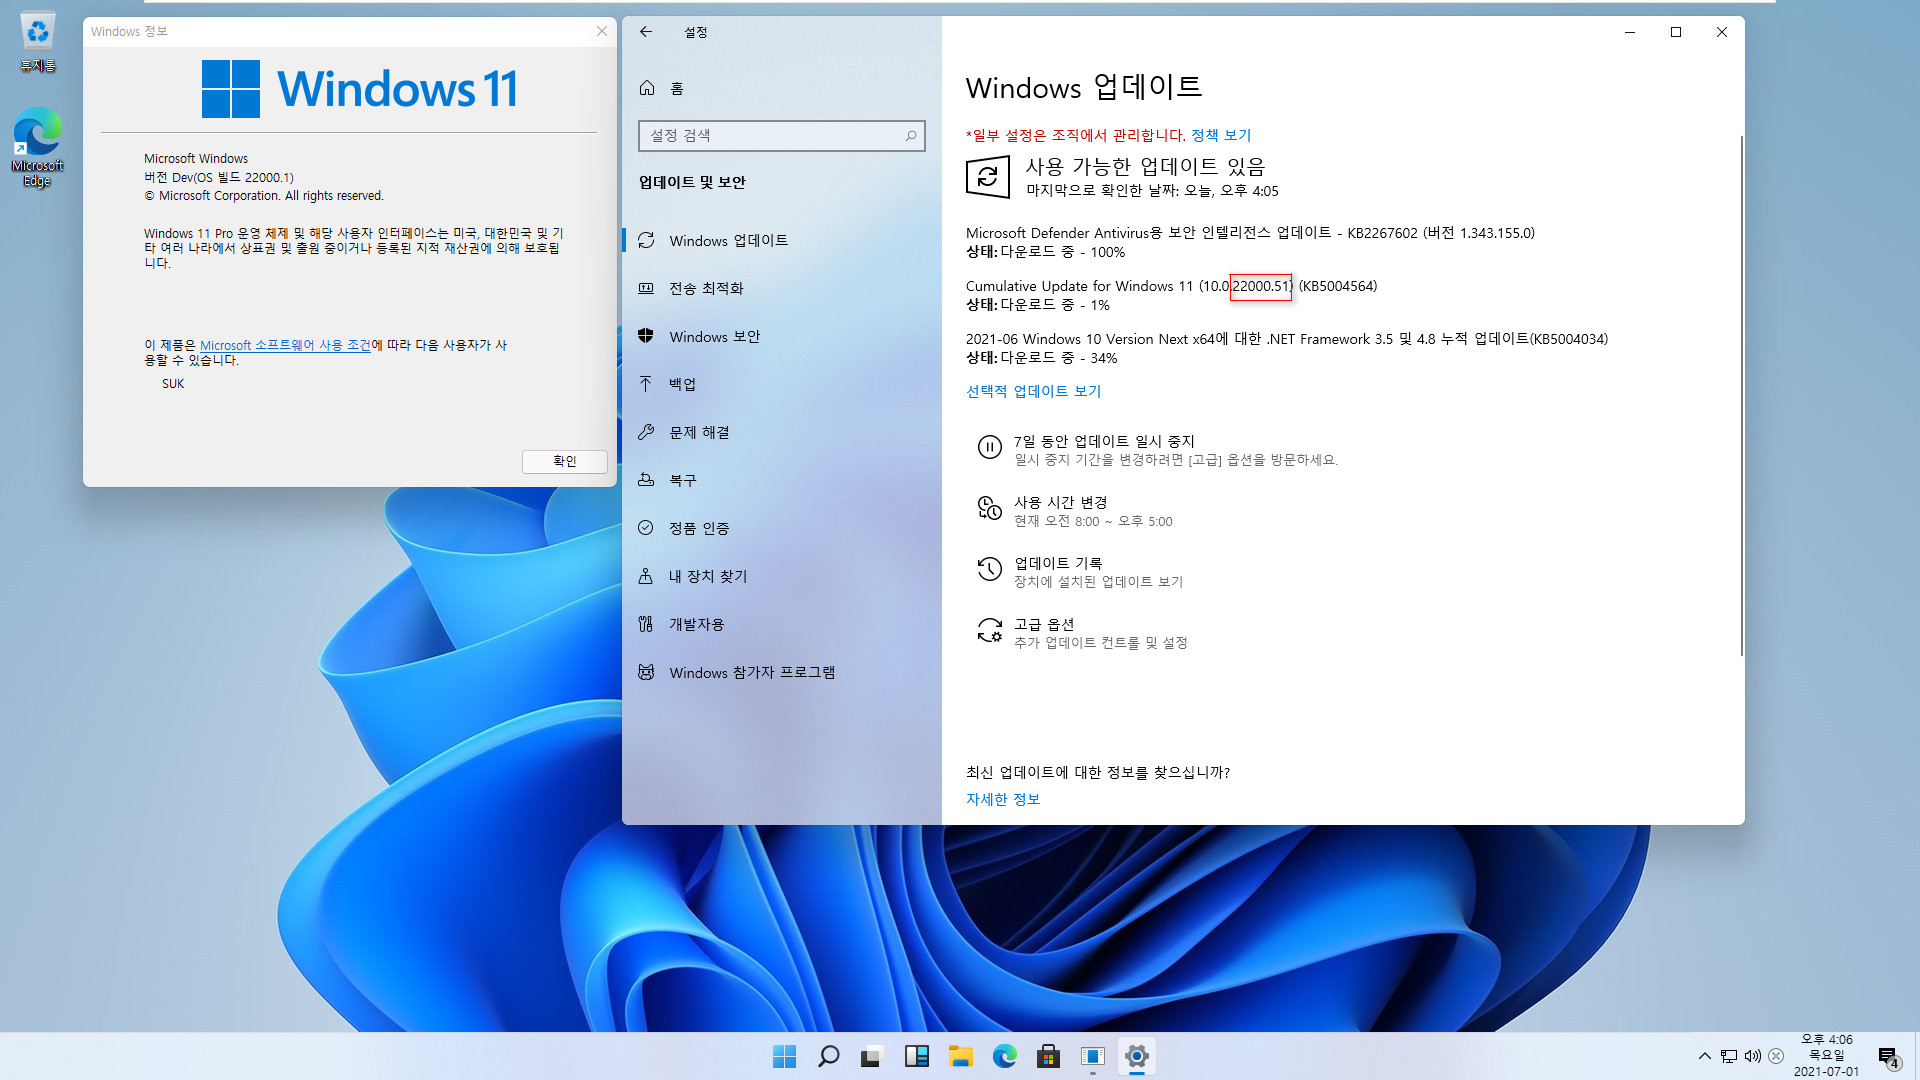 최초의 Windows 11 버전 21H2 - 22000.51 빌드와 22000.1 빌드 차이점들 - 22000.51 누적 업데이트 설치하기 위하여 개발자 채널 활성 2021-07-01_160609.jpg